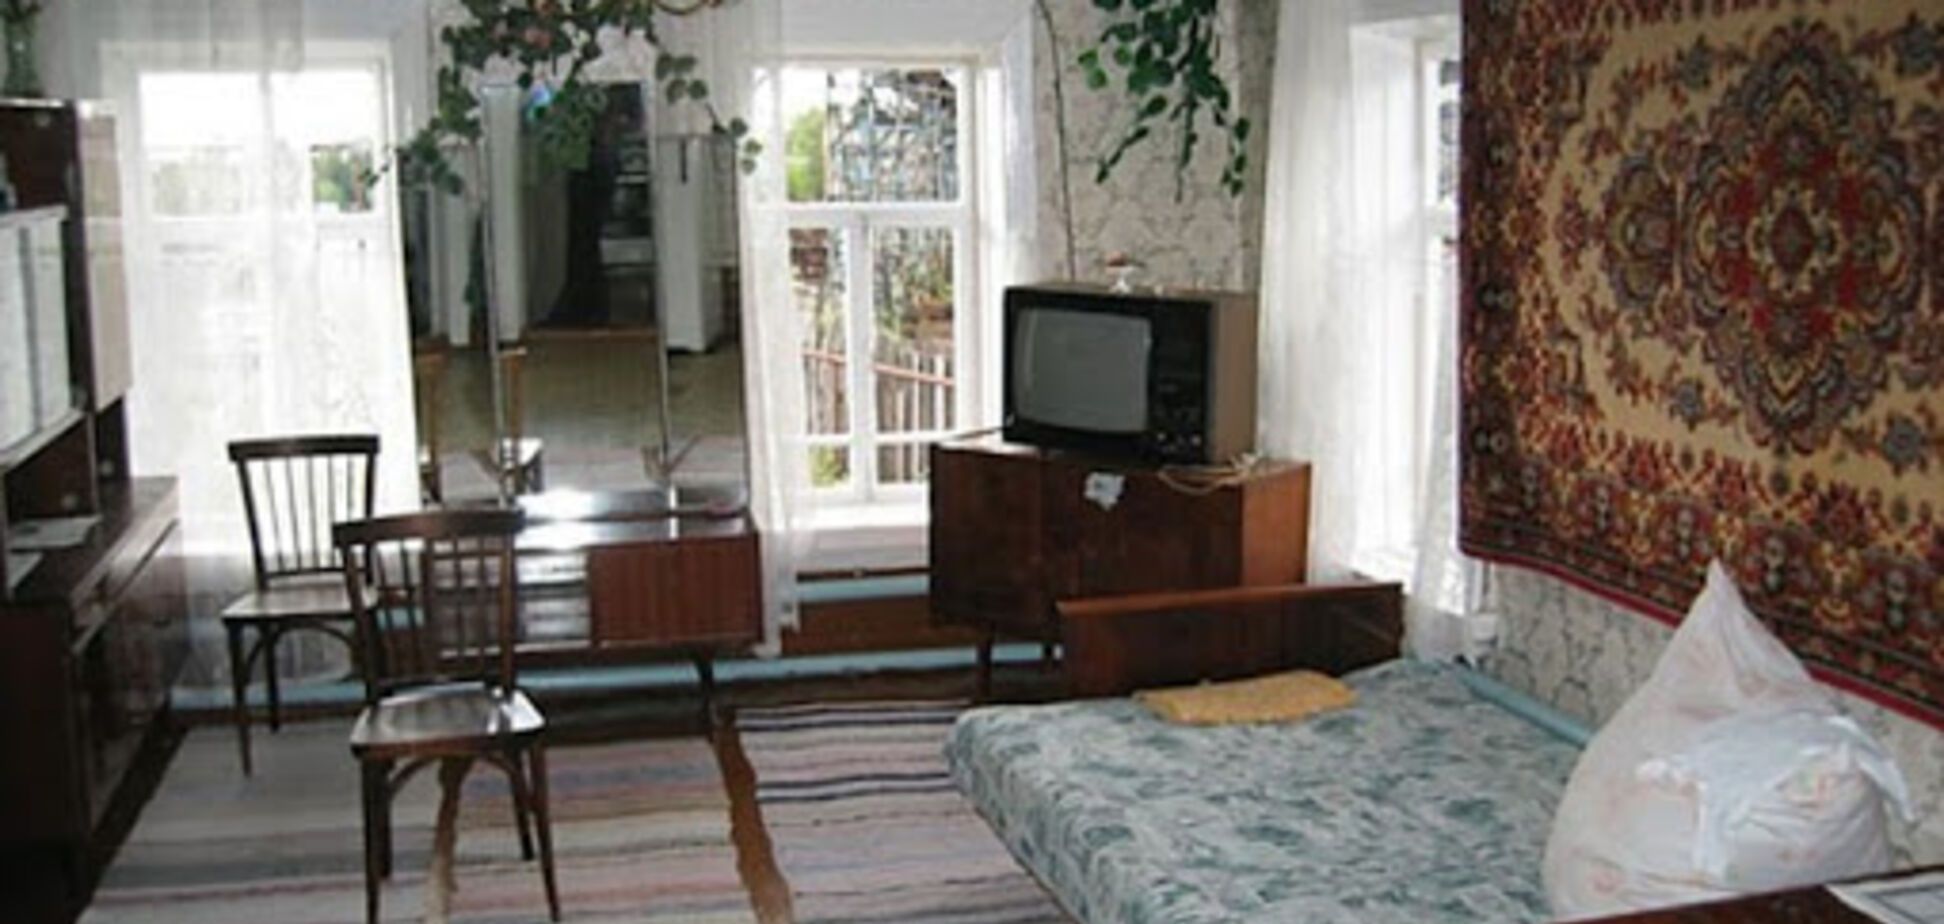 Квартира в советском стиле